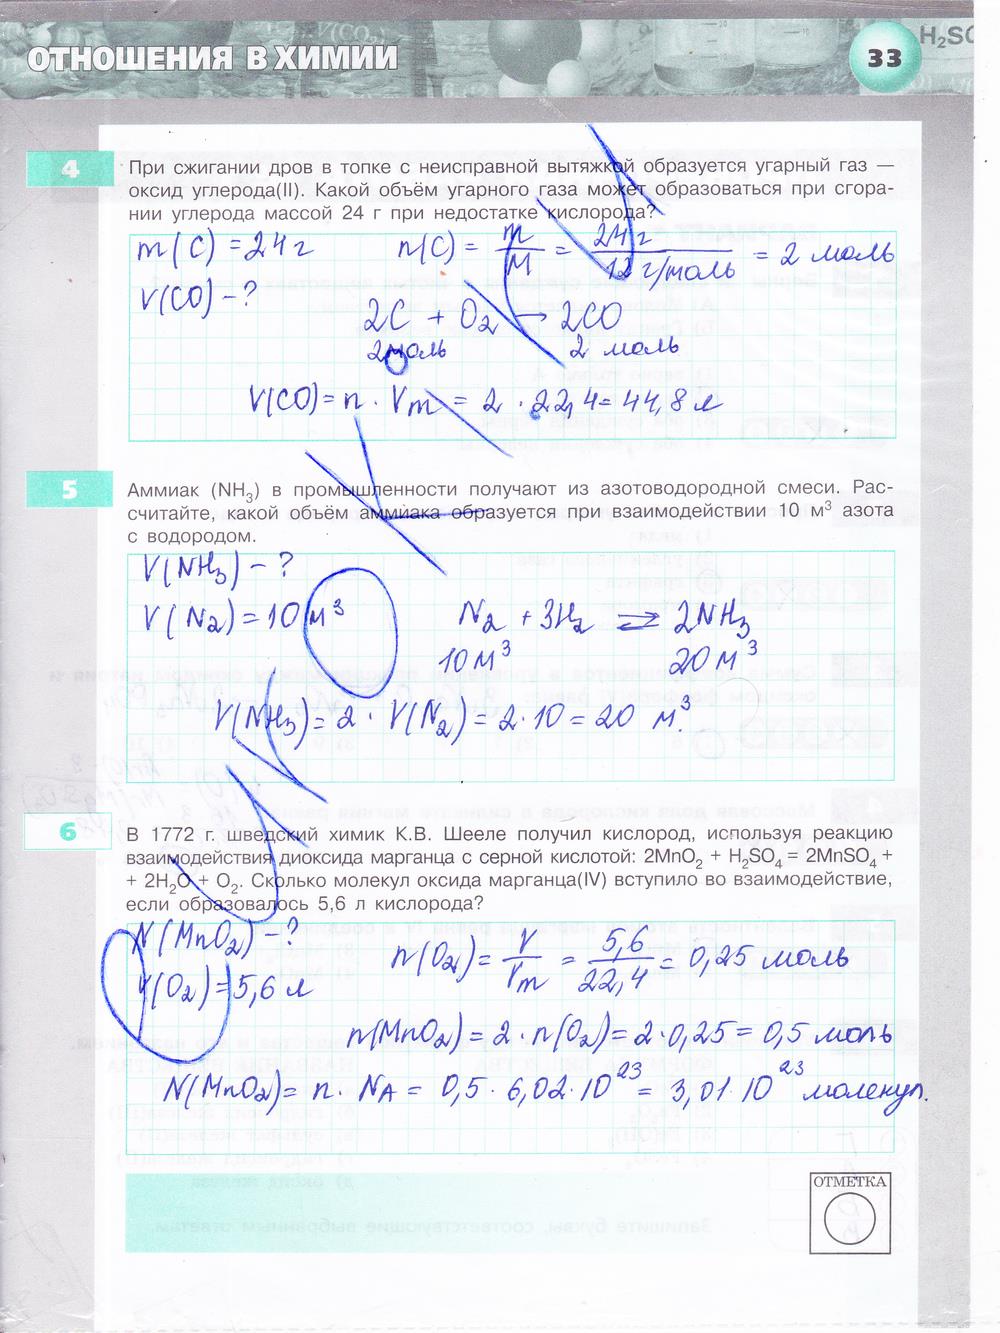 гдз 8 класс тетрадь-экзаменатор страница 33 химия Бобылева, Бирюлина